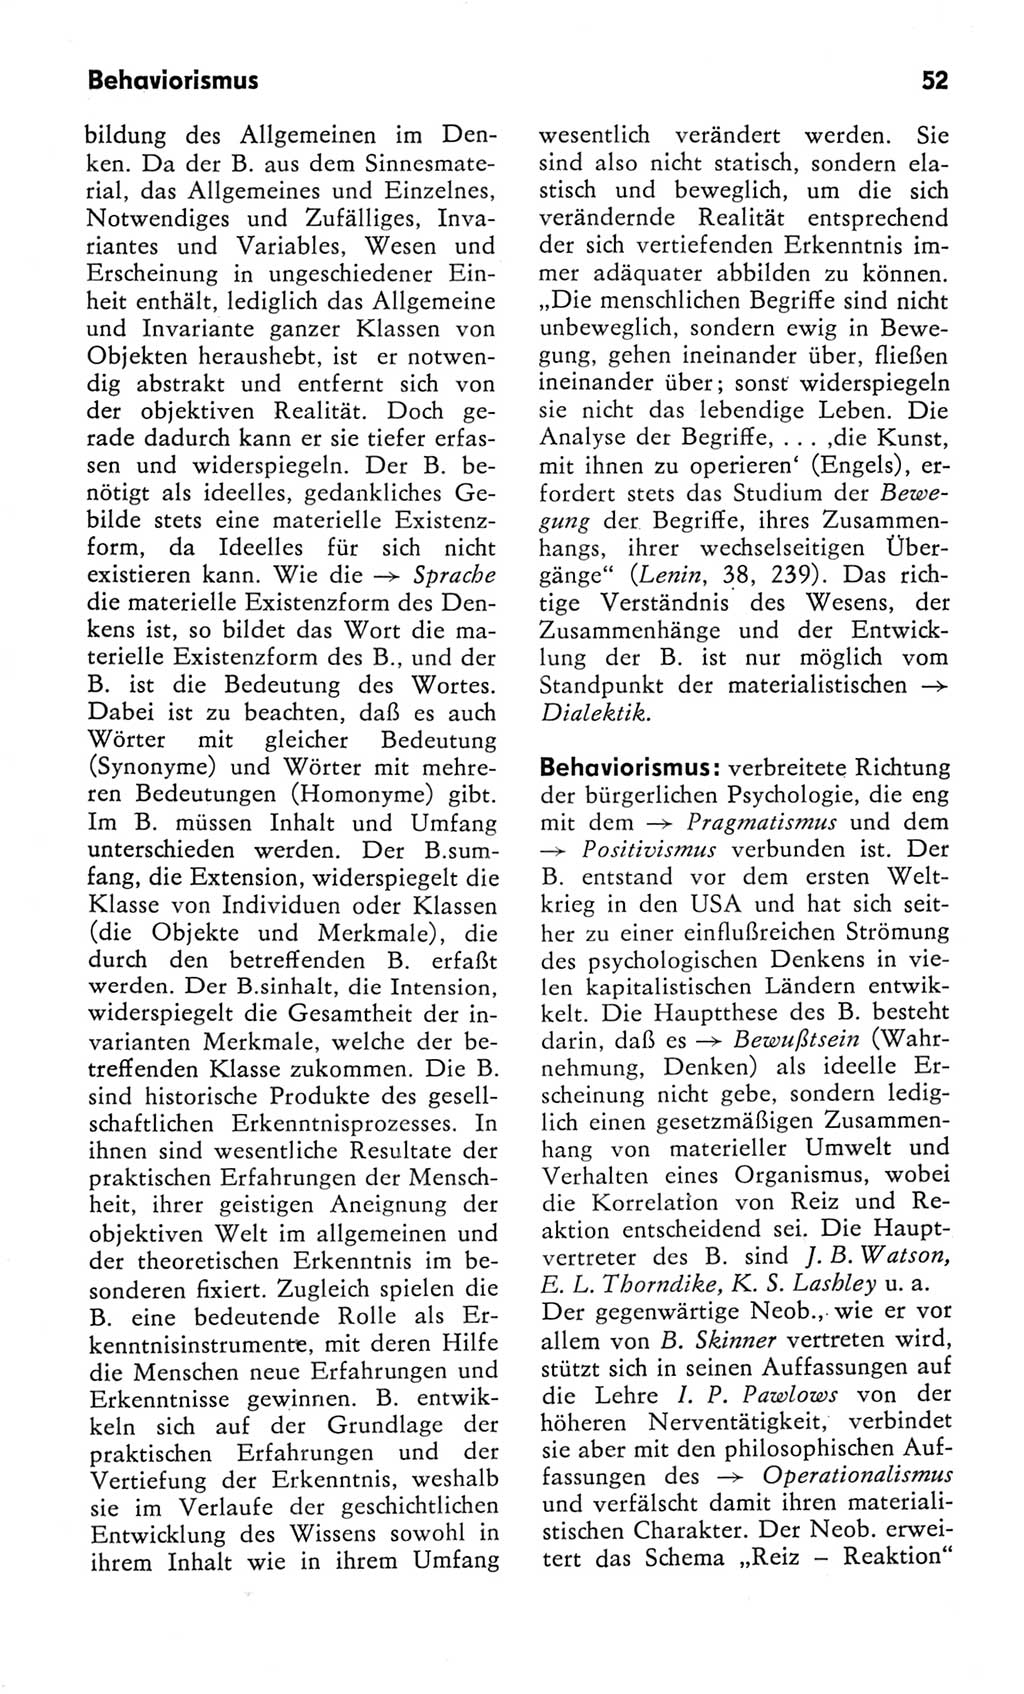 Kleines Wörterbuch der marxistisch-leninistischen Philosophie [Deutsche Demokratische Republik (DDR)] 1982, Seite 52 (Kl. Wb. ML Phil. DDR 1982, S. 52)